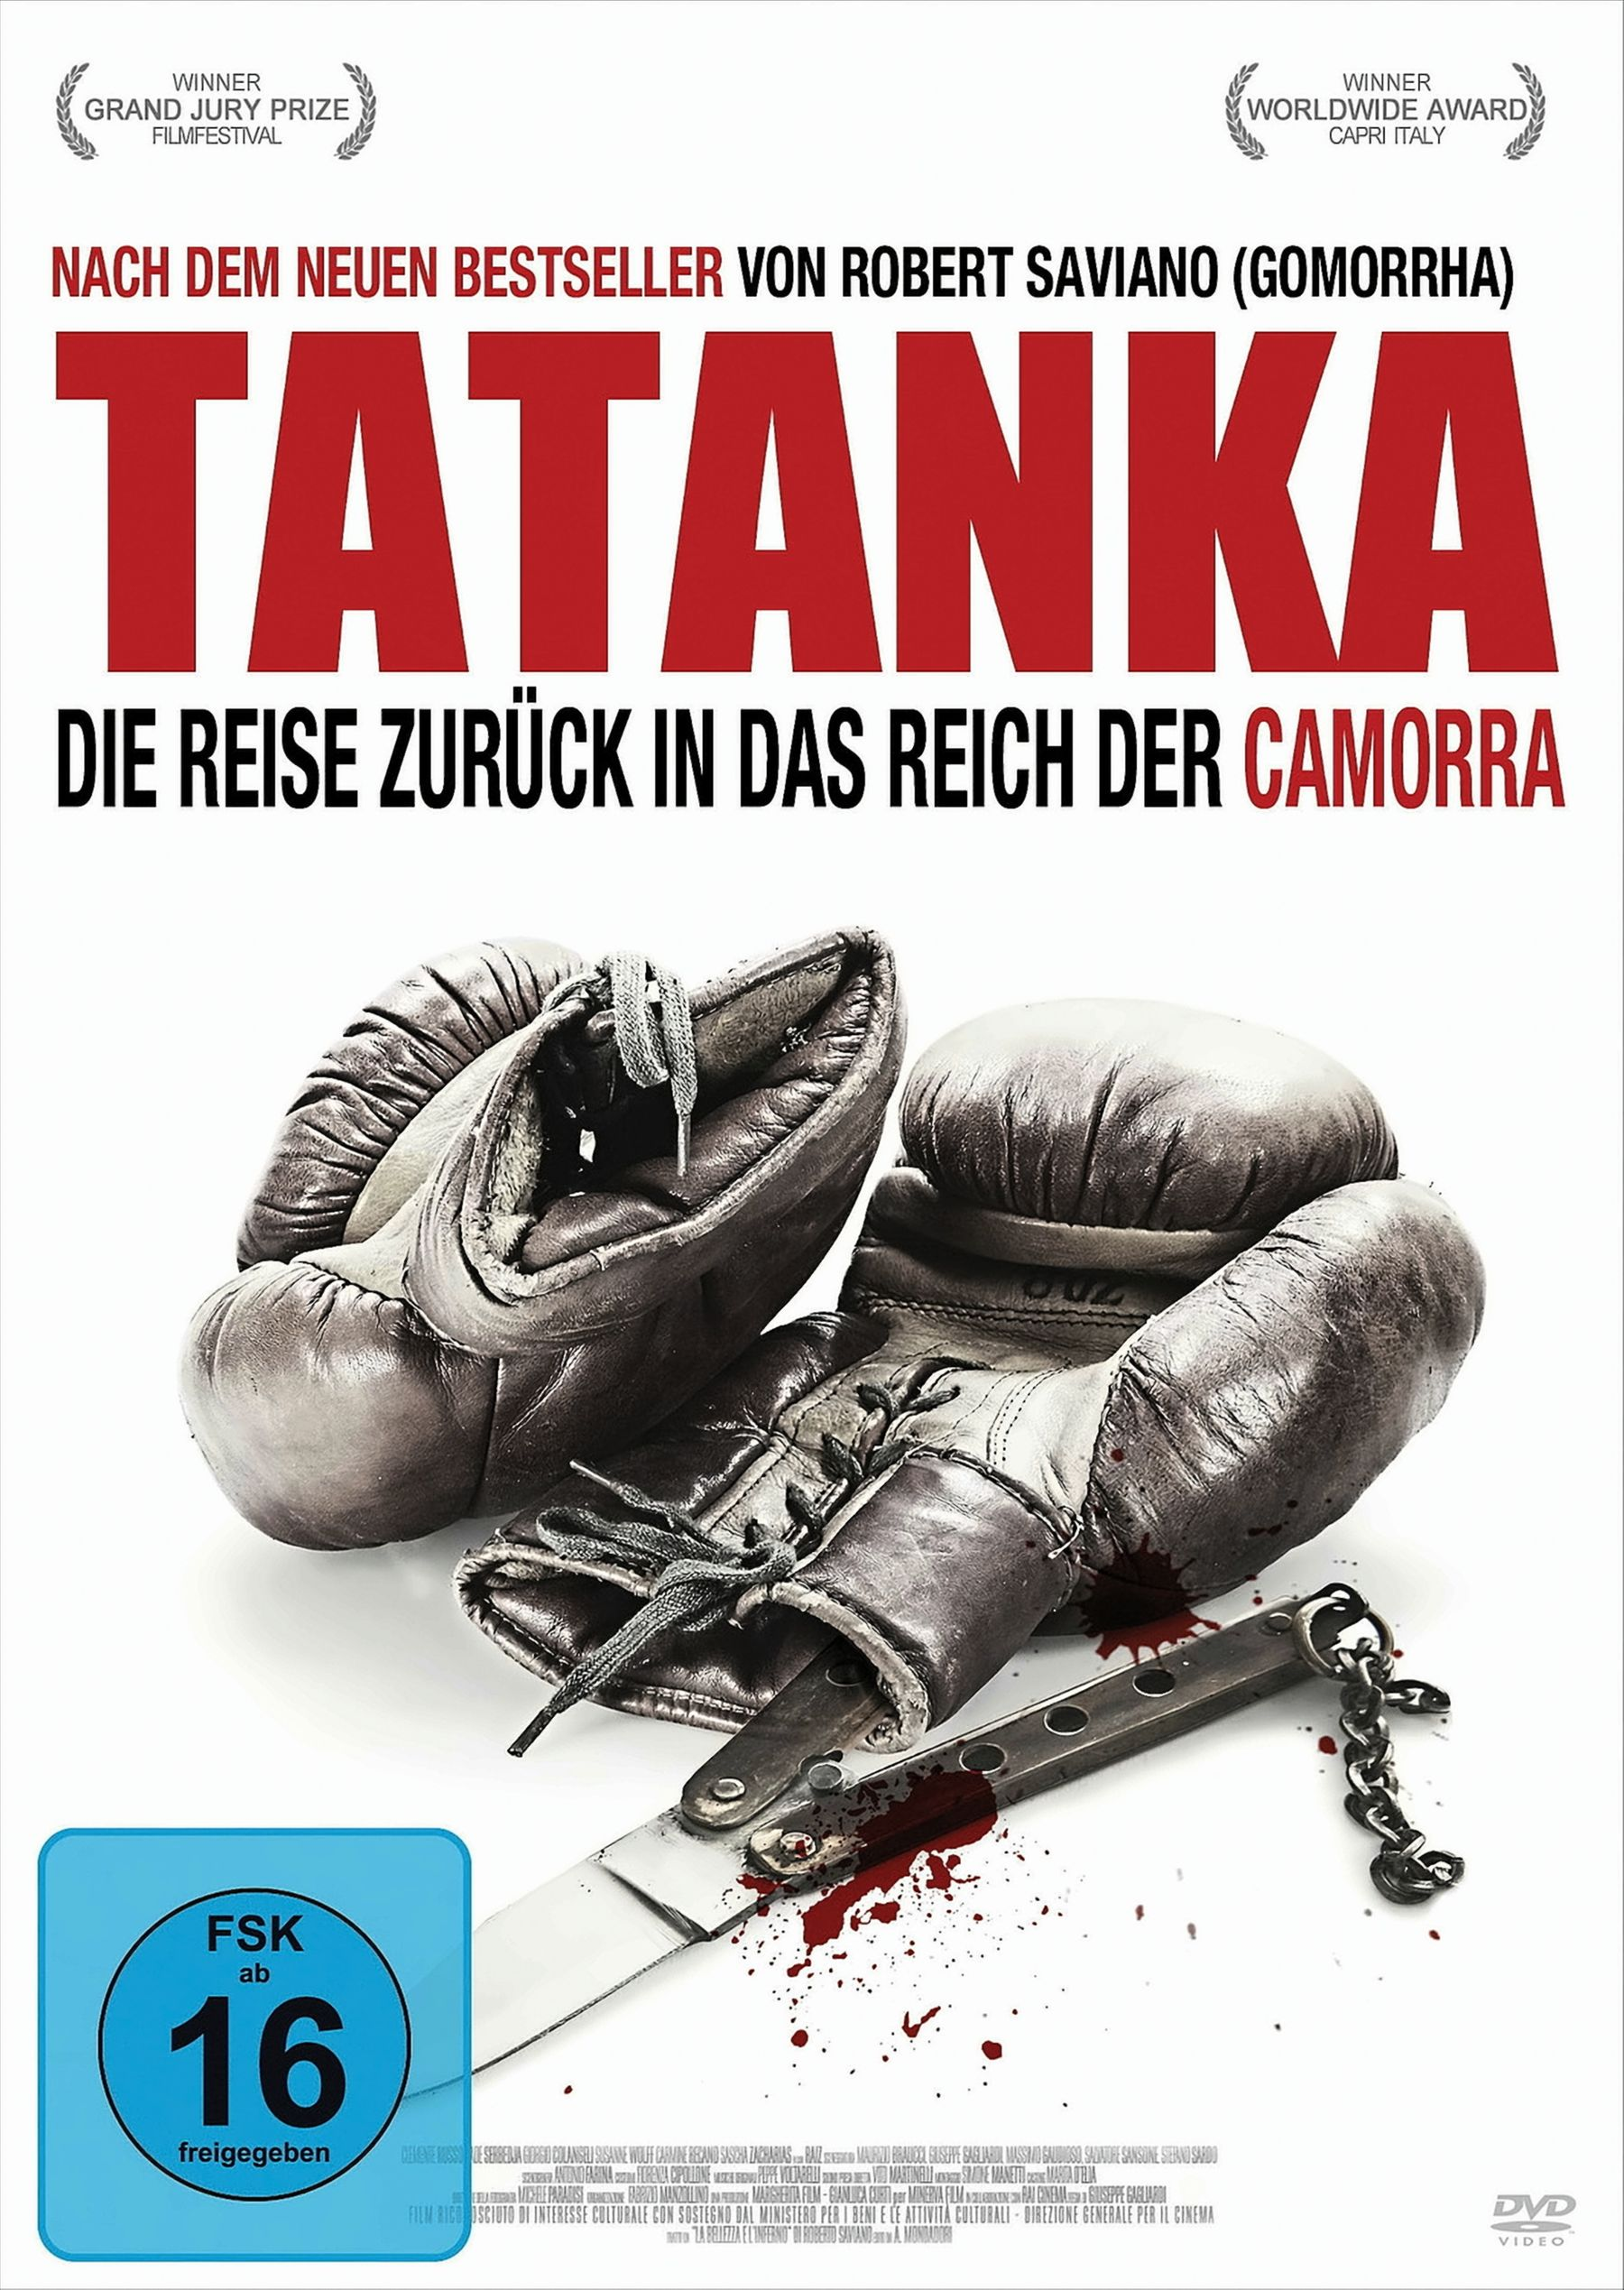 Reich - Die das zurück in DVD Tatanka Camorra Reise der